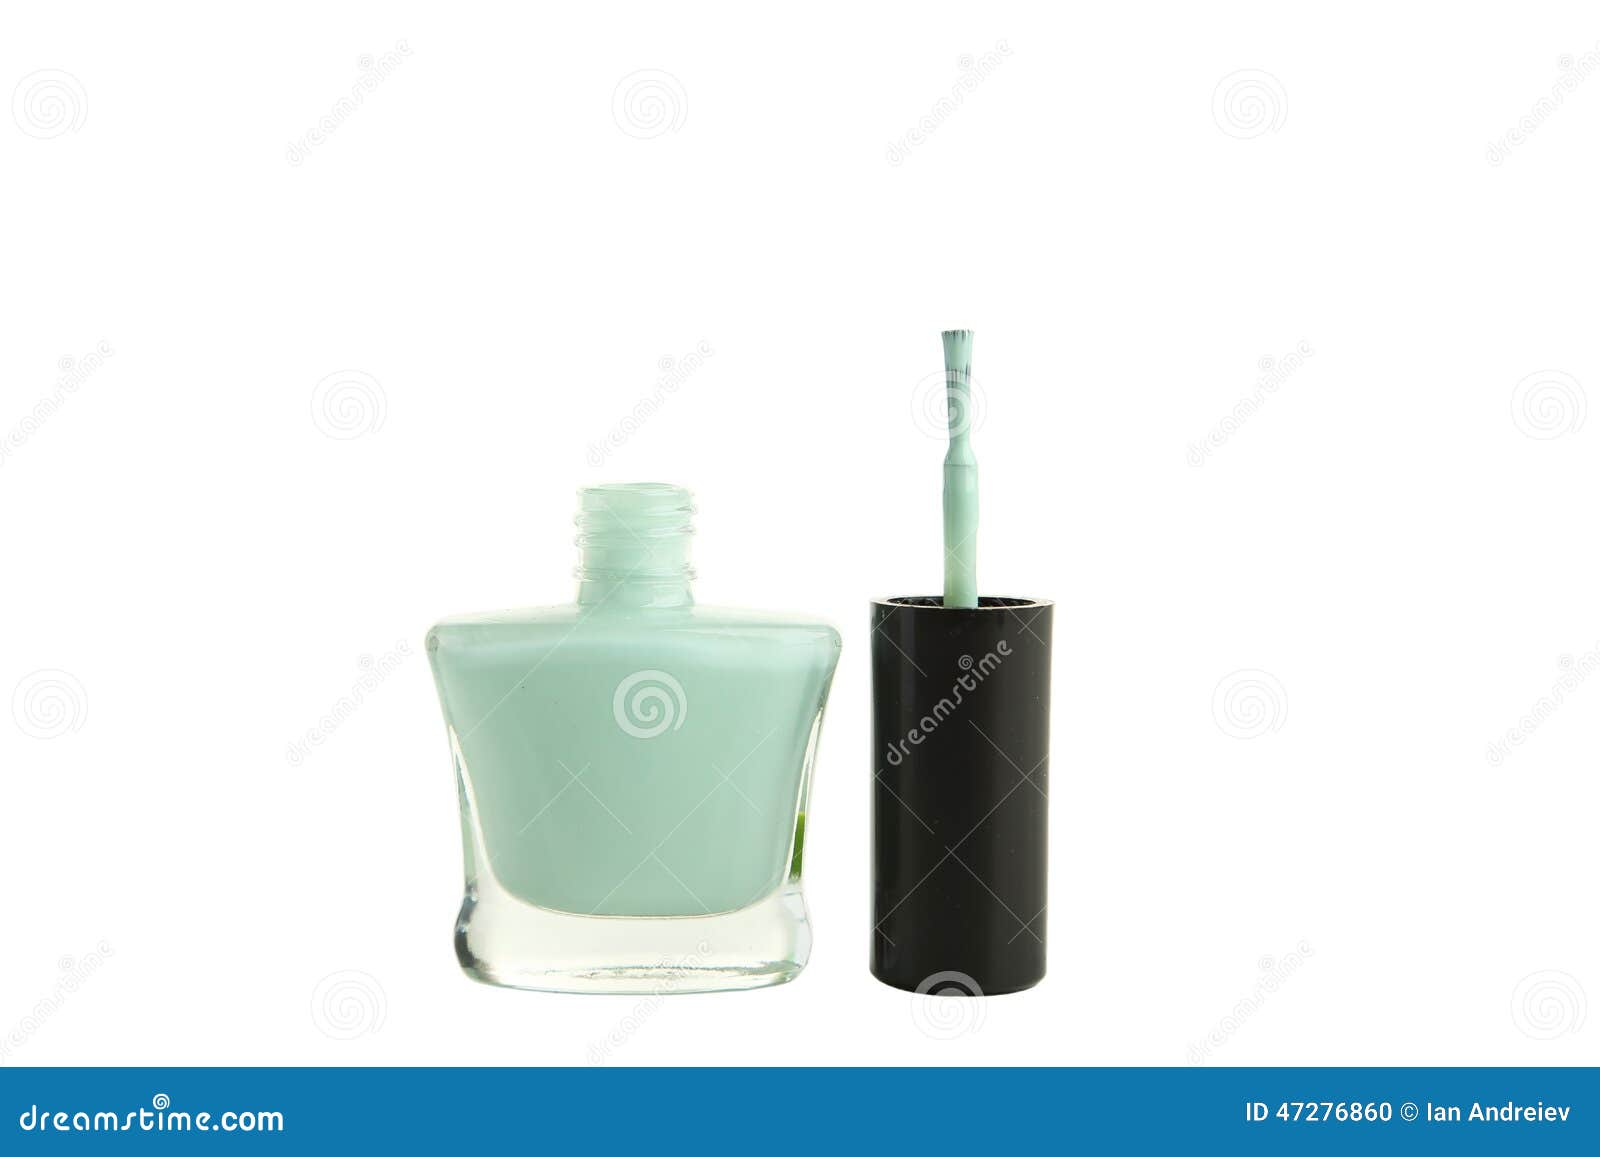 Mint Nail Polish Bottle Isolated on White Stock Photo - Image of female ...